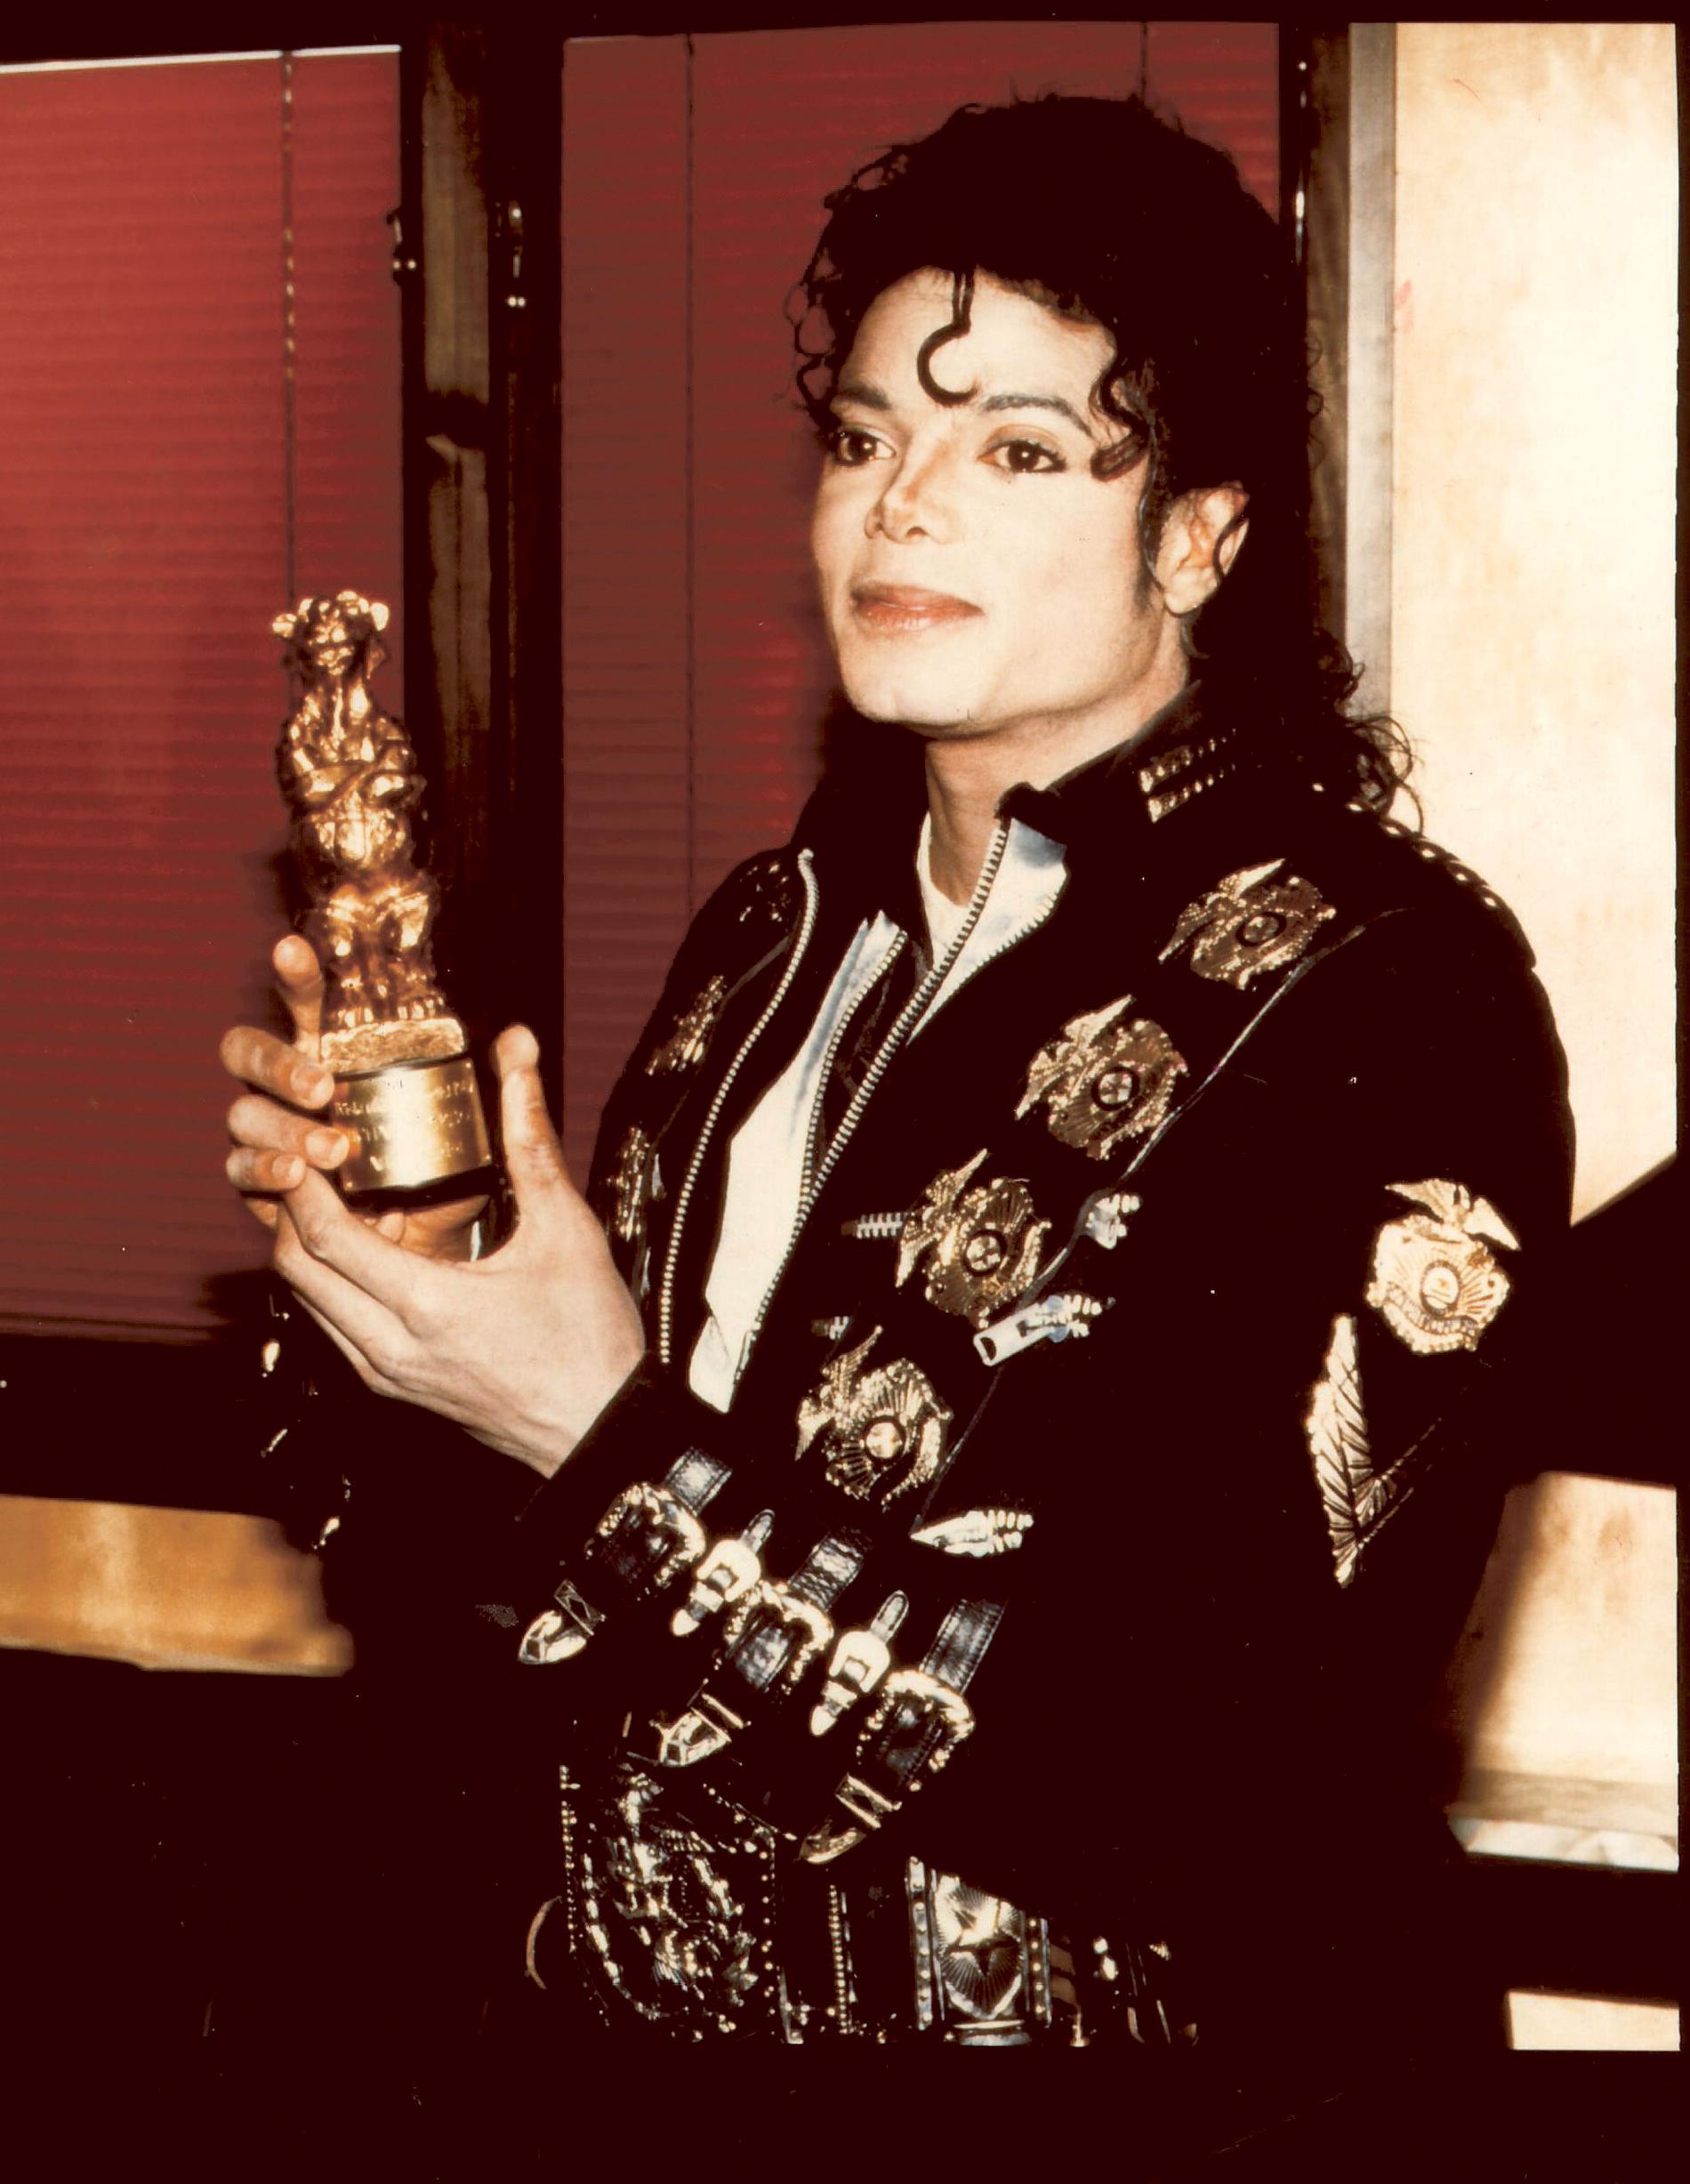 Michael Jackson Michael Jackson släppte sitt första album på fem år 1987 och ”Bad” blev en omedelbar succé. Det var hans tredje soloalbum och popkungen åkte på en stor turné. Som grädde på moset fick han dessutom en guldskimrande nalle av svenska folket som Bästa utländska artist.